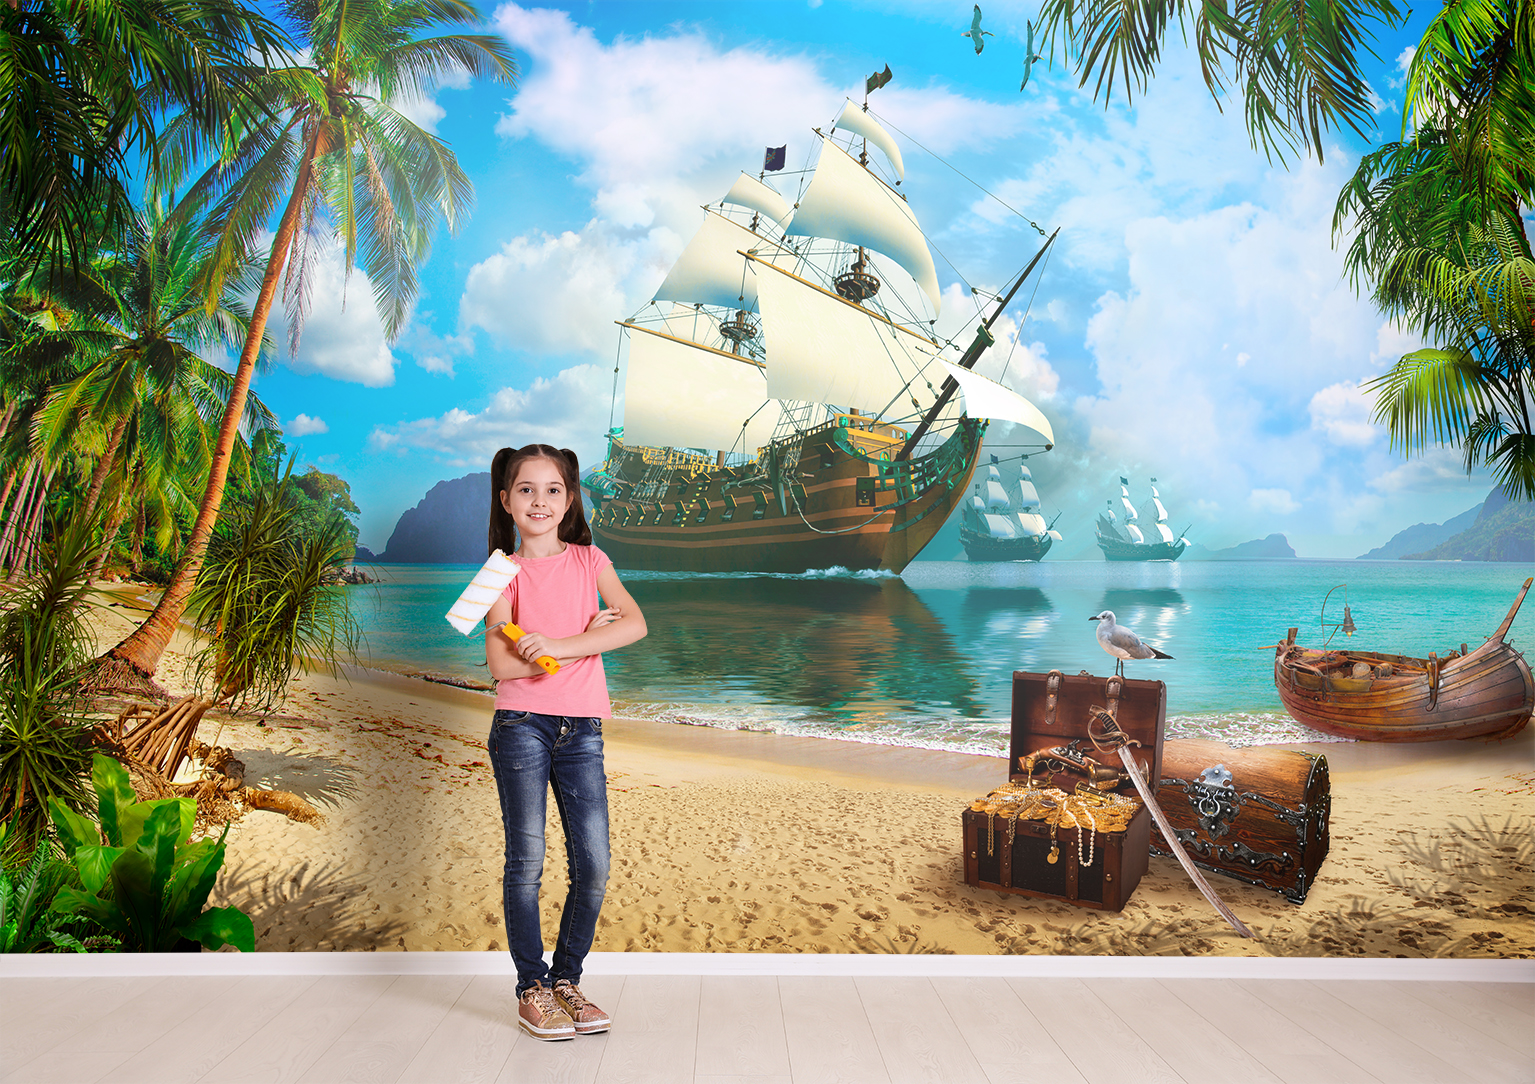 коврик противоскользящий joyarty пиратский парусник для ванной сауны бассейна 77х52см Фотообои Photostena Пиратский остров 4 x 2,5 м